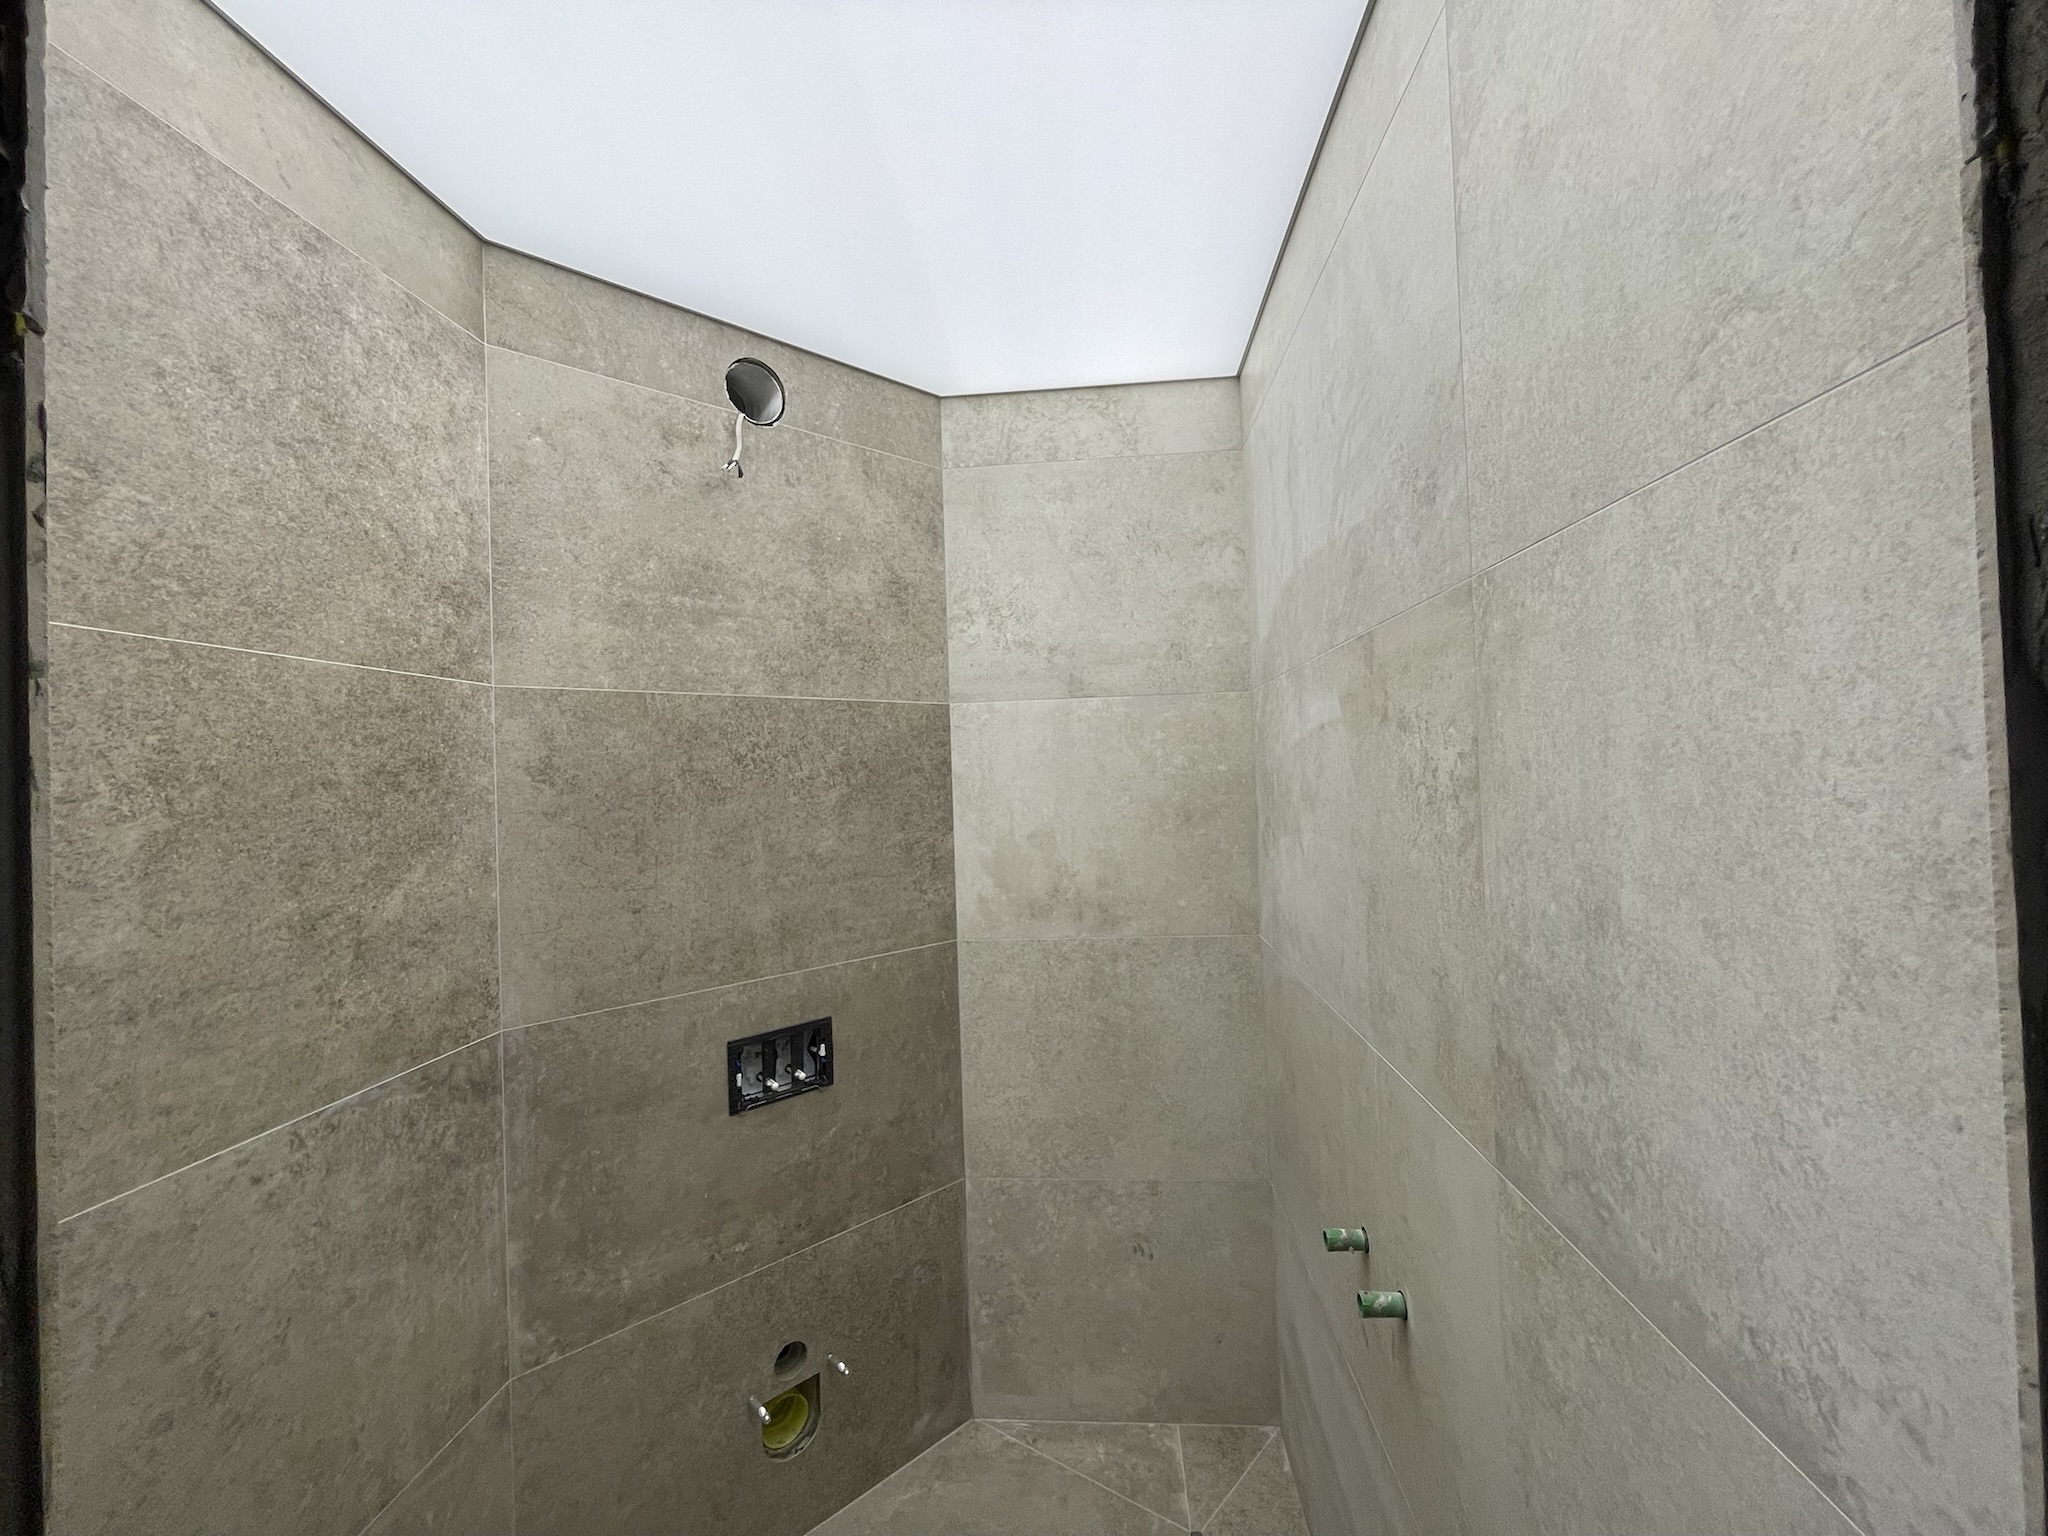 Опънати тавани в бани и мокри помещения